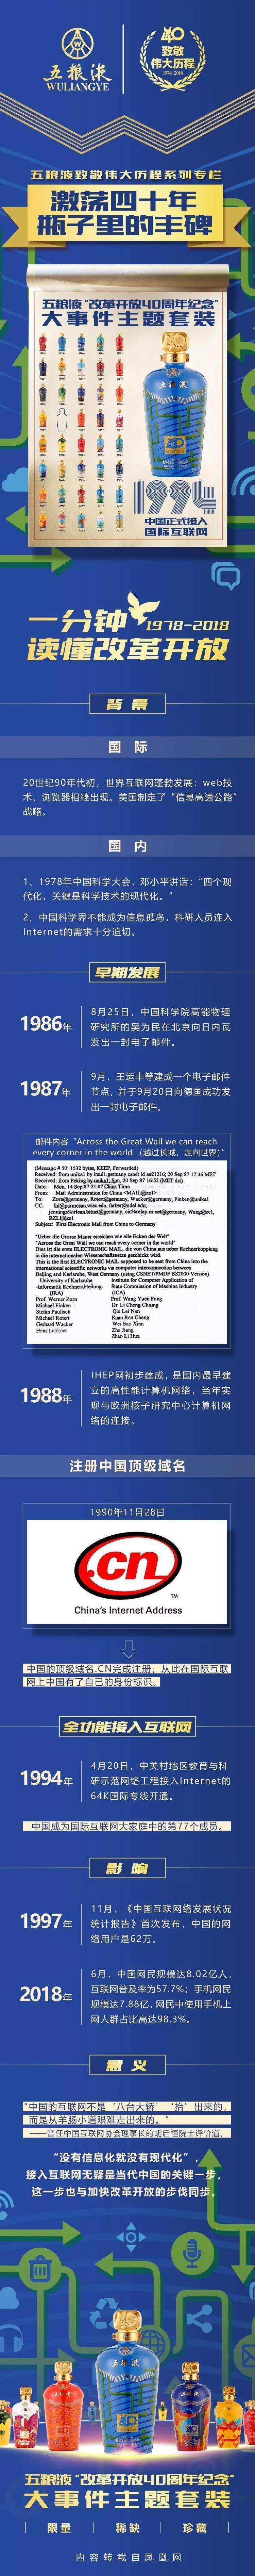 激荡四十年 · 1994 中国正式接入国际互联网｜五粮液致敬伟大历程系列专栏（十七）